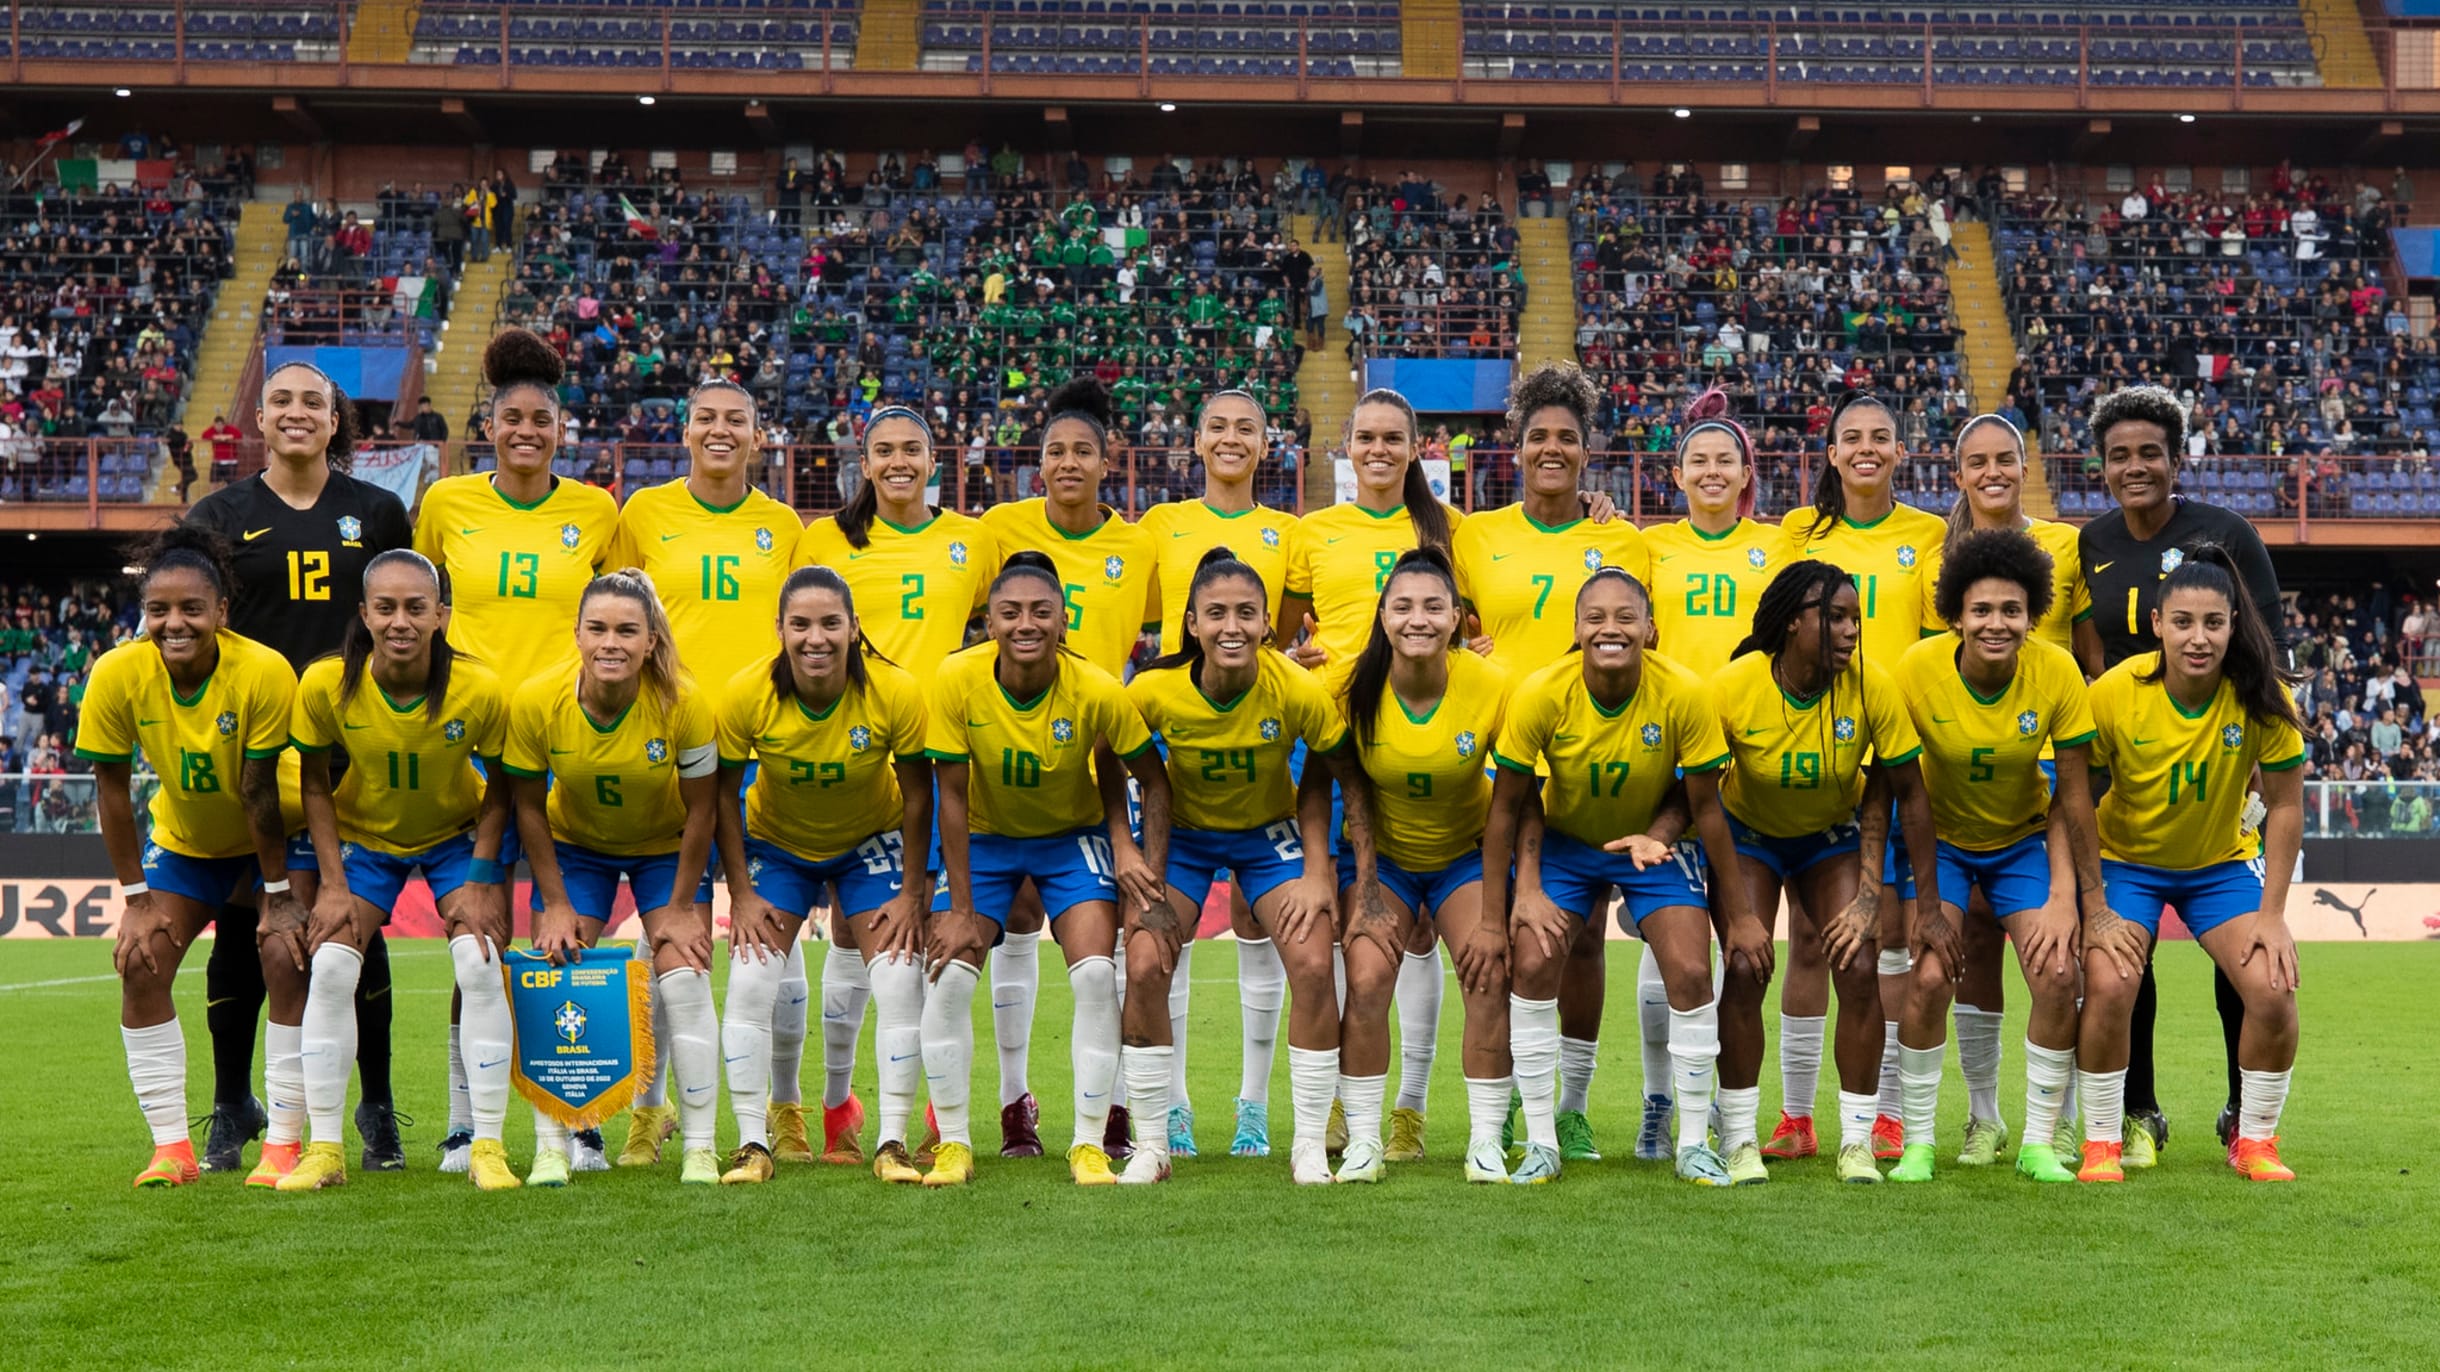 Jogo Amigável Internacional 2022 : Seleção Brasileira De Futebol Feminino  Brasileira Contra Canadá Imagem de Stock Editorial - Imagem de paulo,  futebol: 261742804